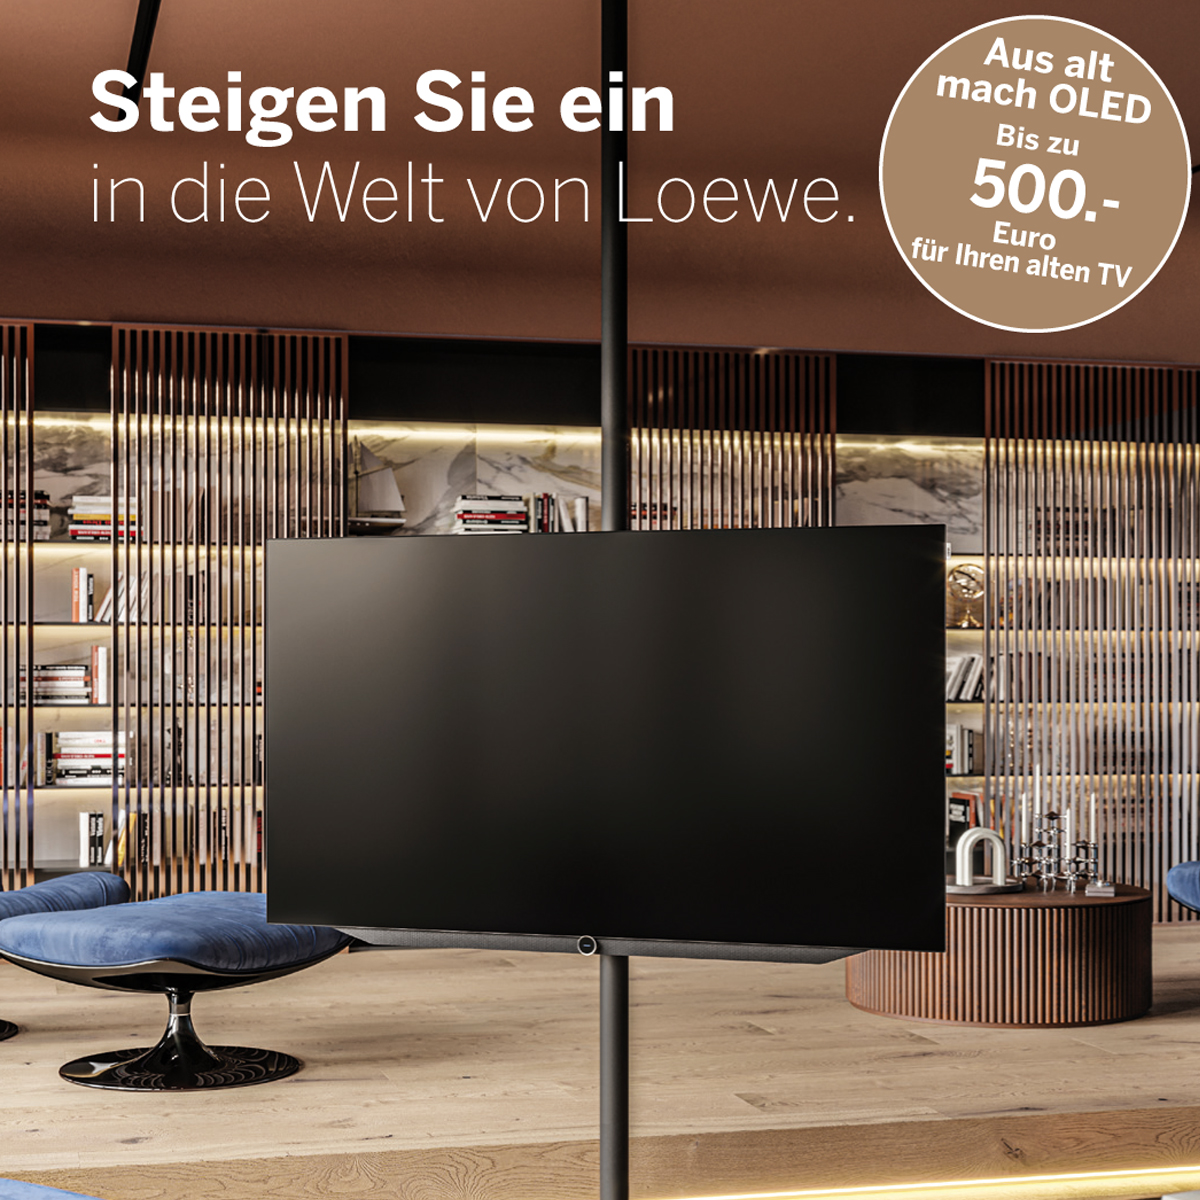 Der neue Loewe bild v Smart-TV begeistert mit integrierter Festplatte, 4K-OLED, HDR10, HLG & Dolby Vision™. Für ein perfektes Fernsehvergnügen optimiert. Jetzt auf LOEWE TV umsteigen. Preisvorteil bis zu 500 € sichern